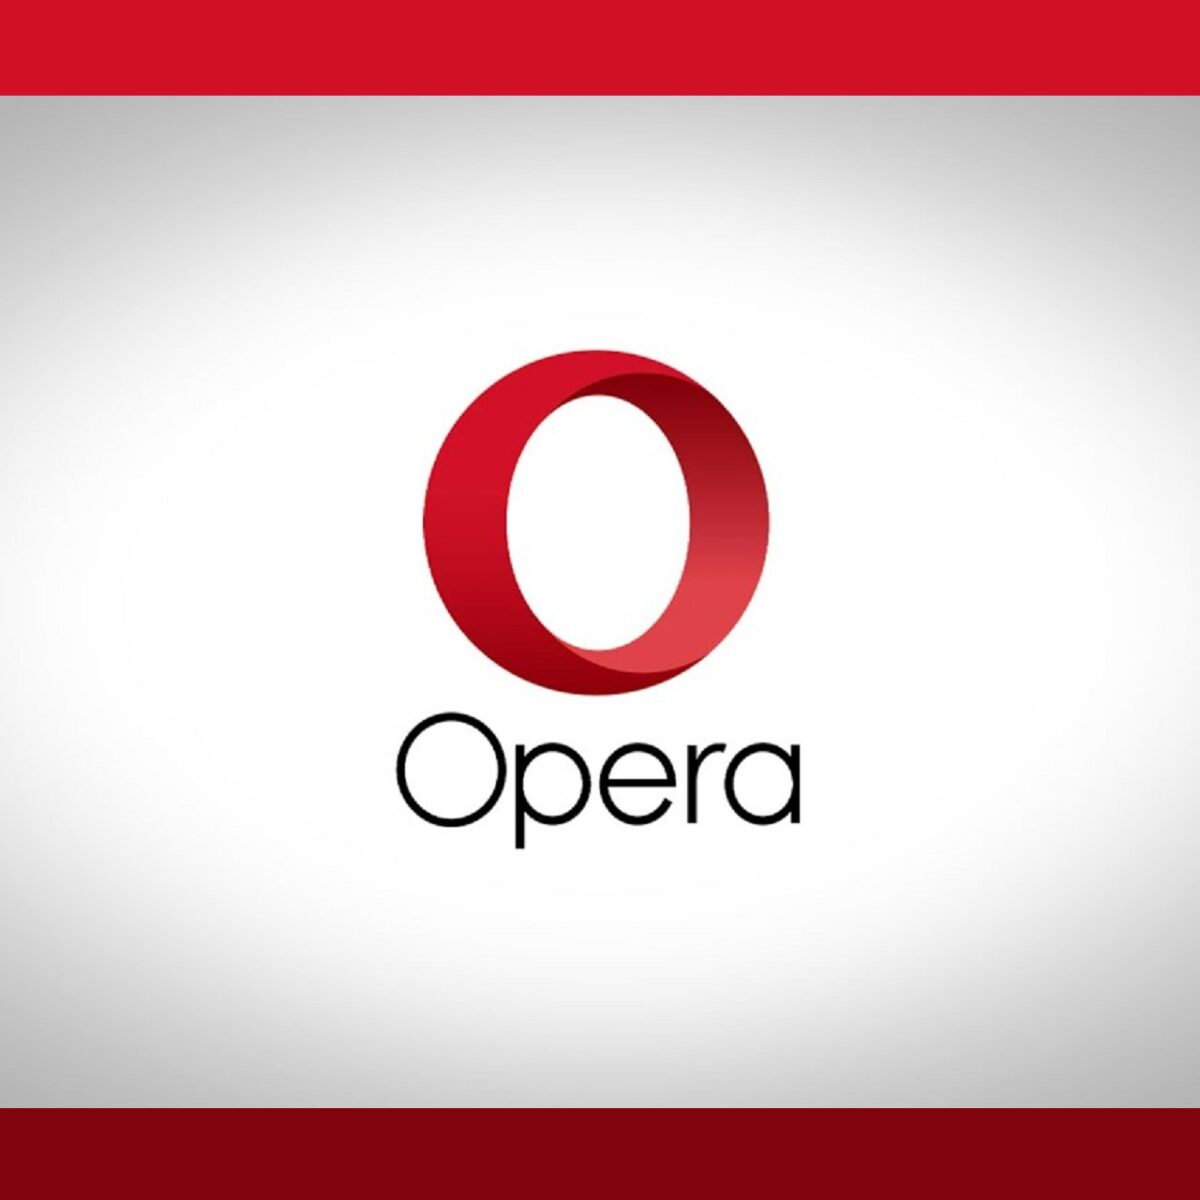 opera mini for pc download 2016